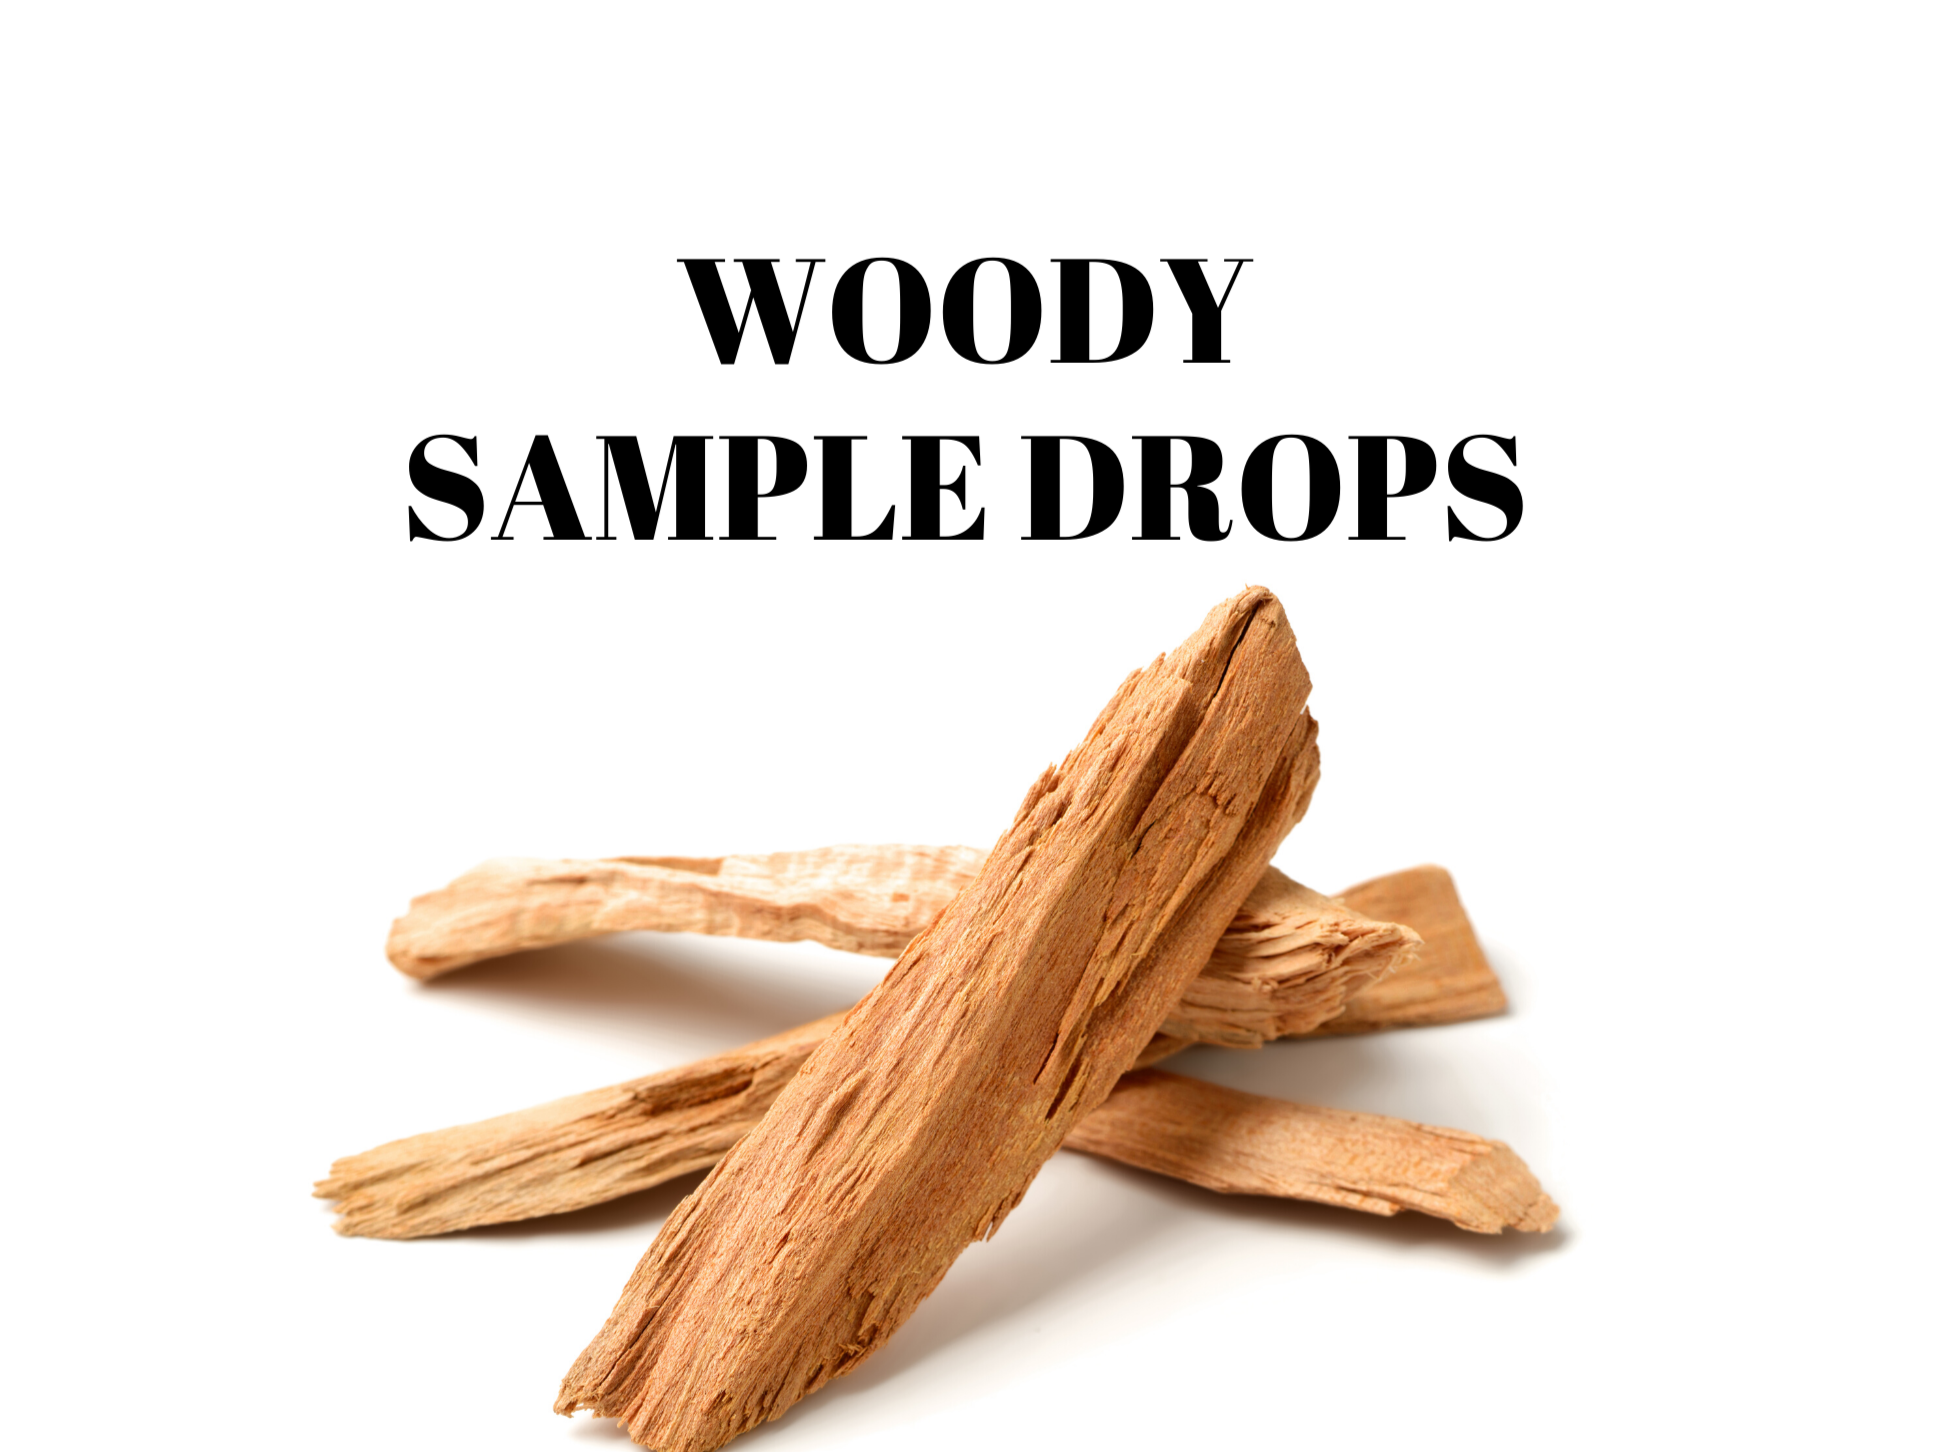 Woody Sample Drops